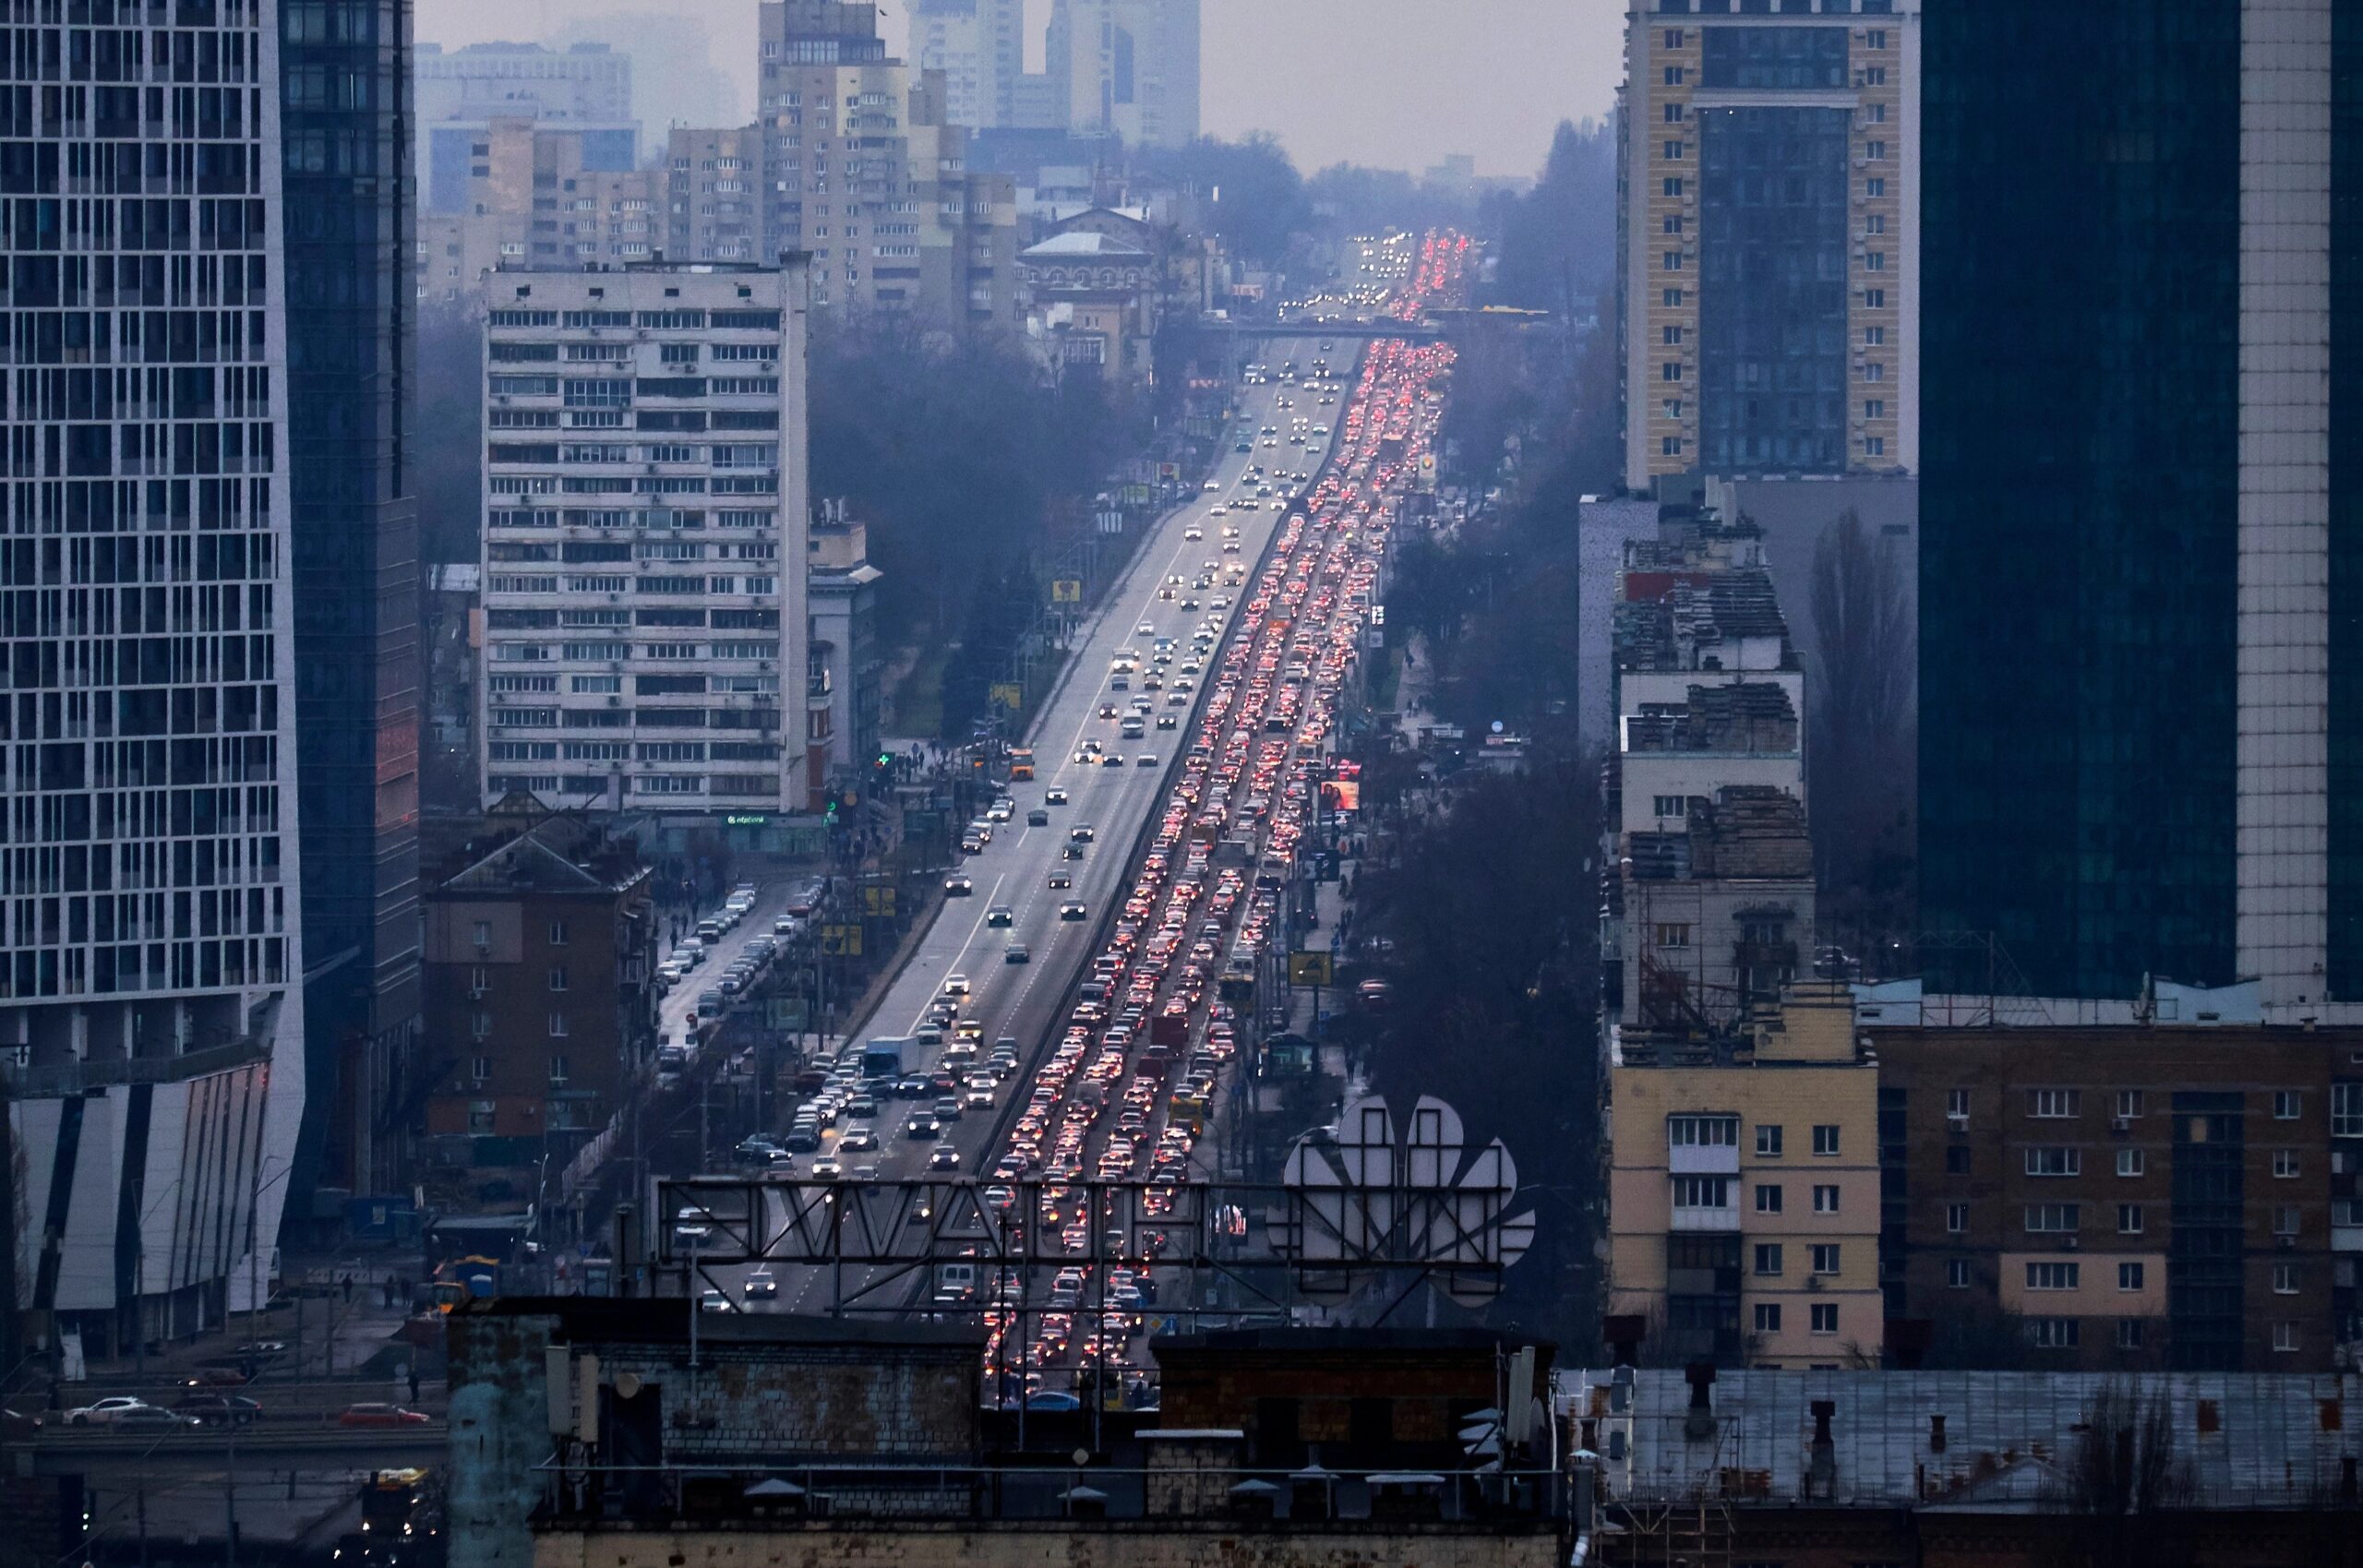 Se produjo un atasco de tráfico en Kiev cuando miles intentaron huir de la ciudad.